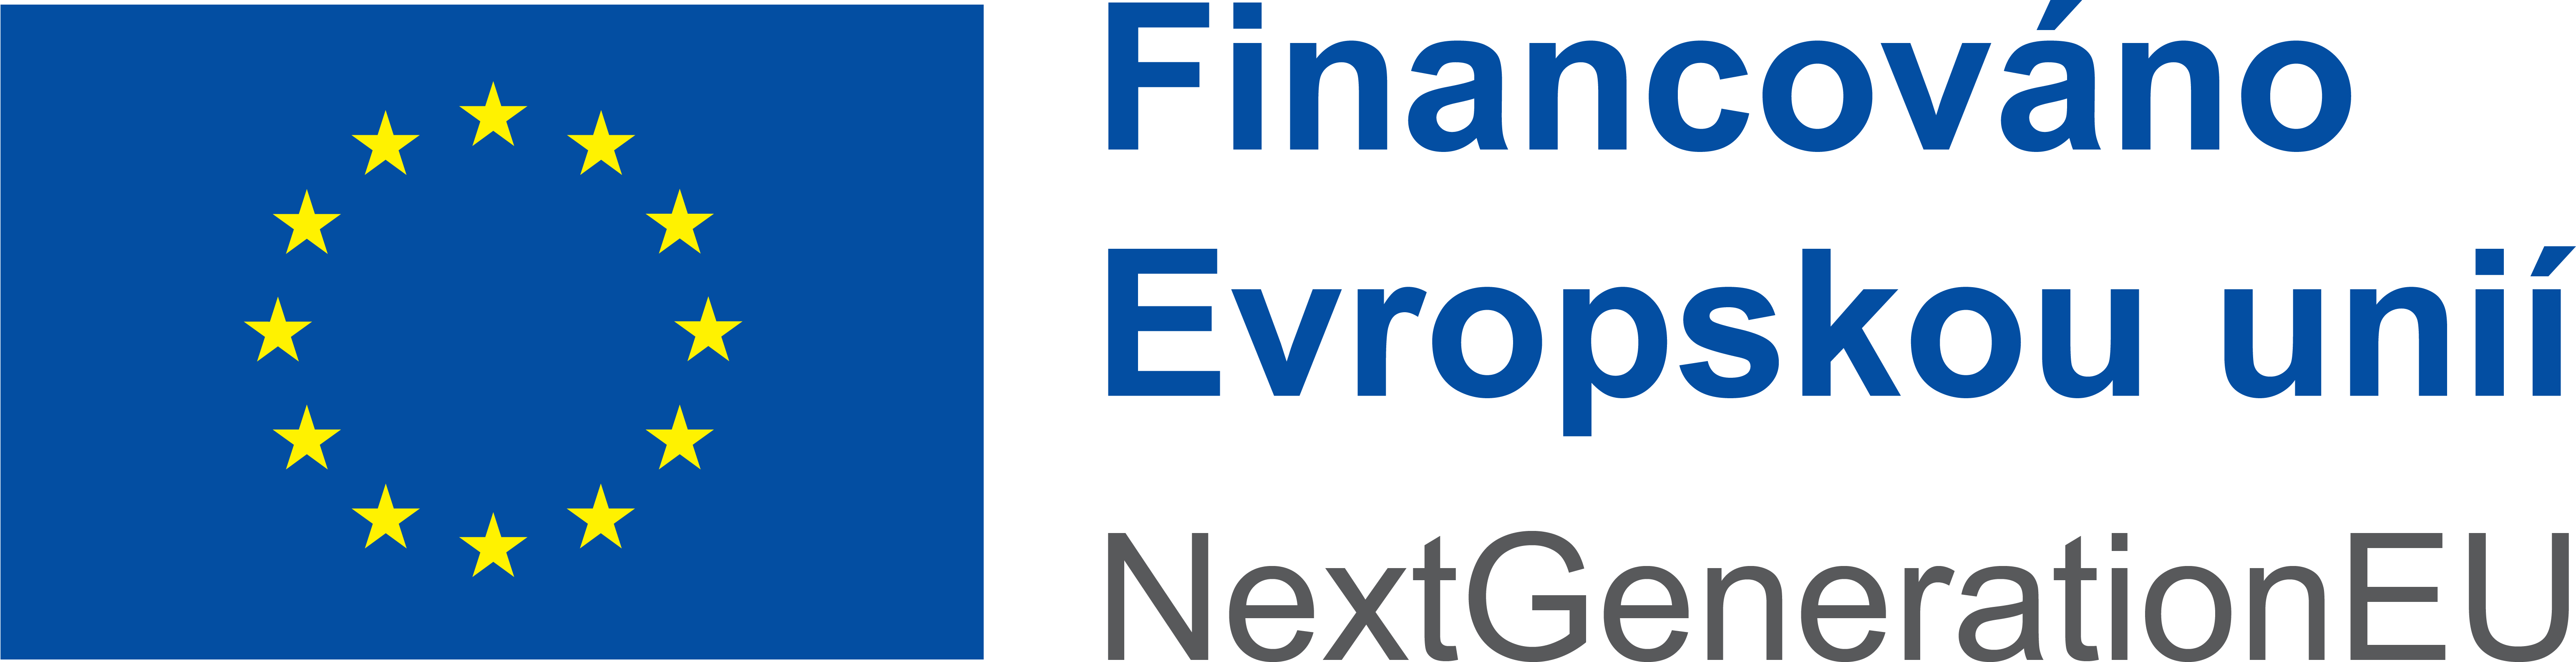 logo - Financováno Evropskou unií | NextGeneration